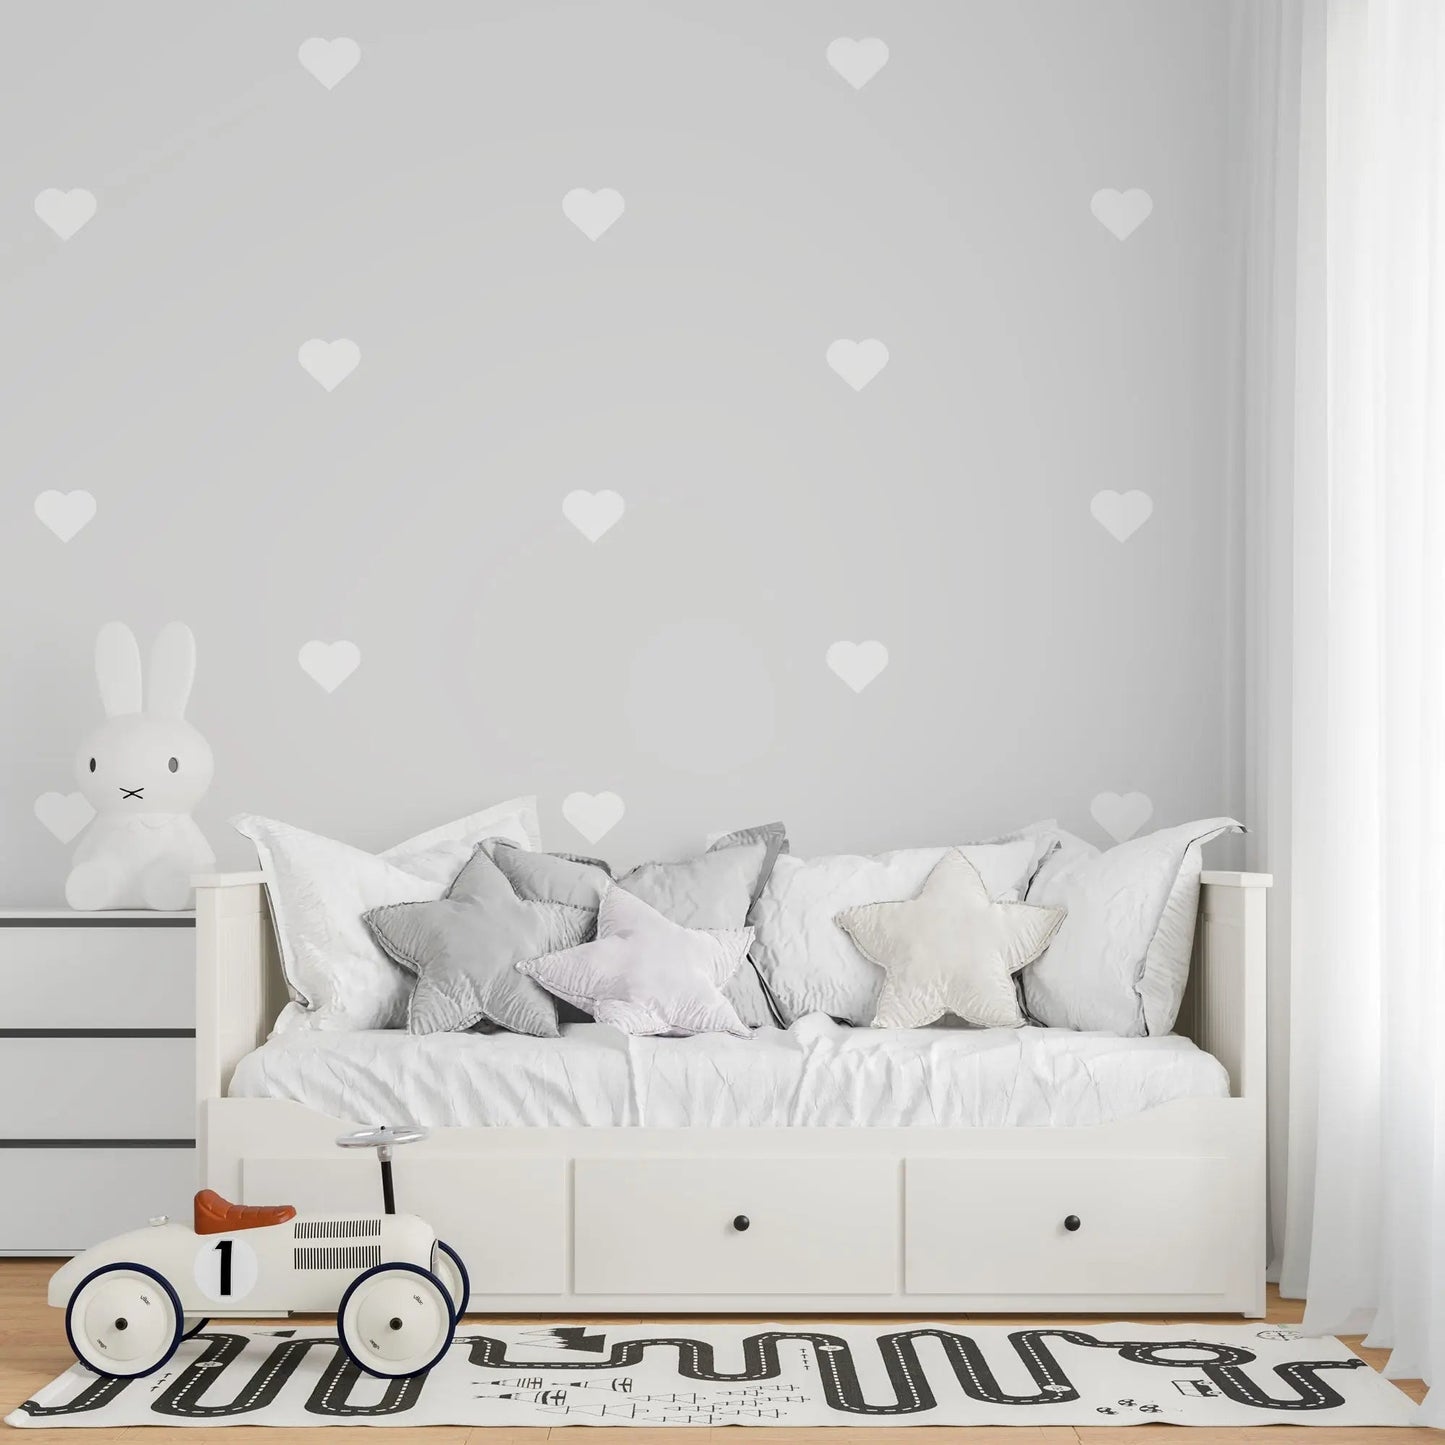 Motivtapete mit Herzen für Kinderzimmer oder Babyzimmer in grau mit weißen Möbeln.